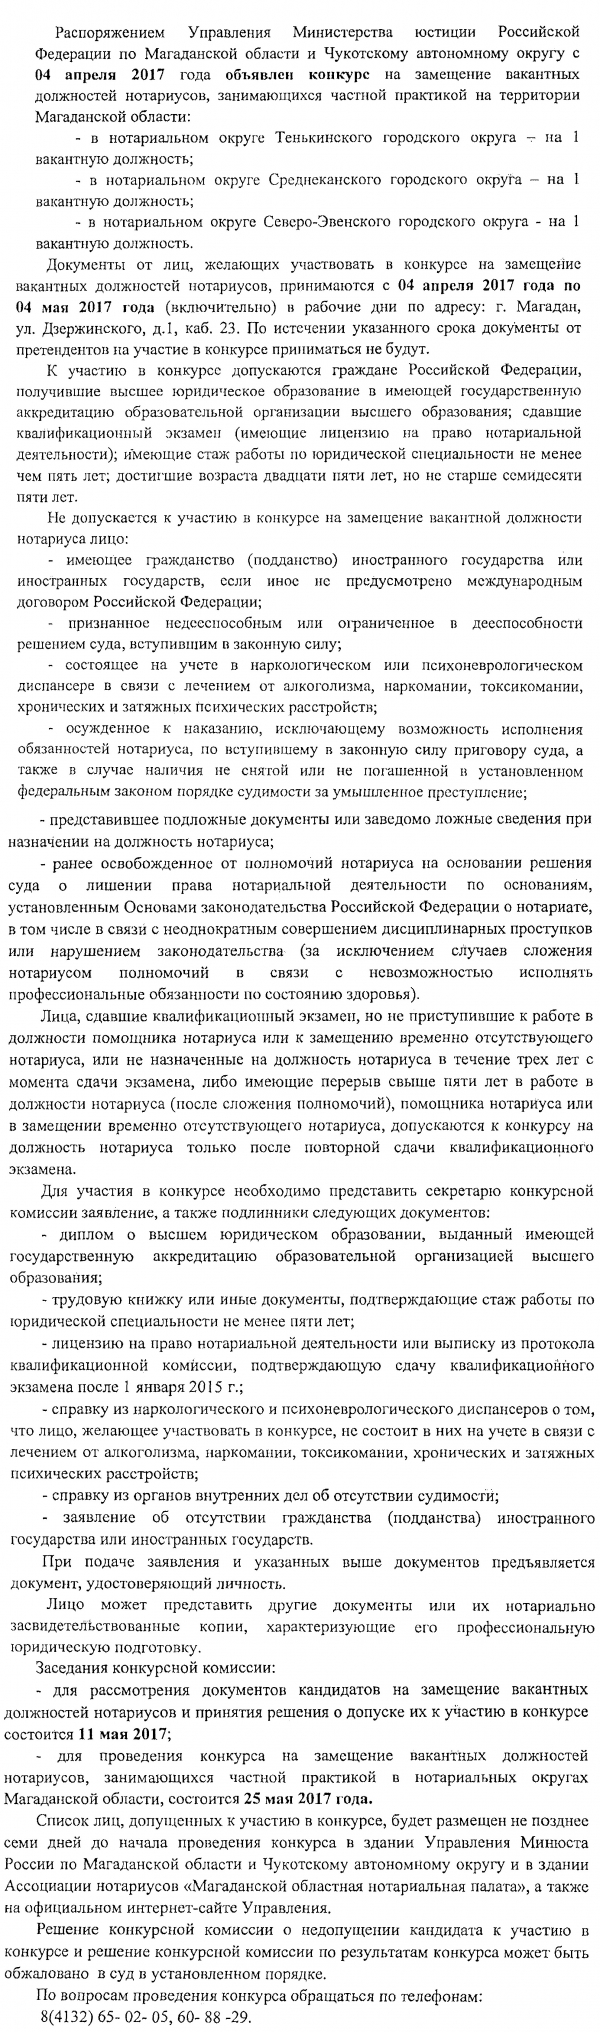 Магаданская область и Чукотский автономный округ